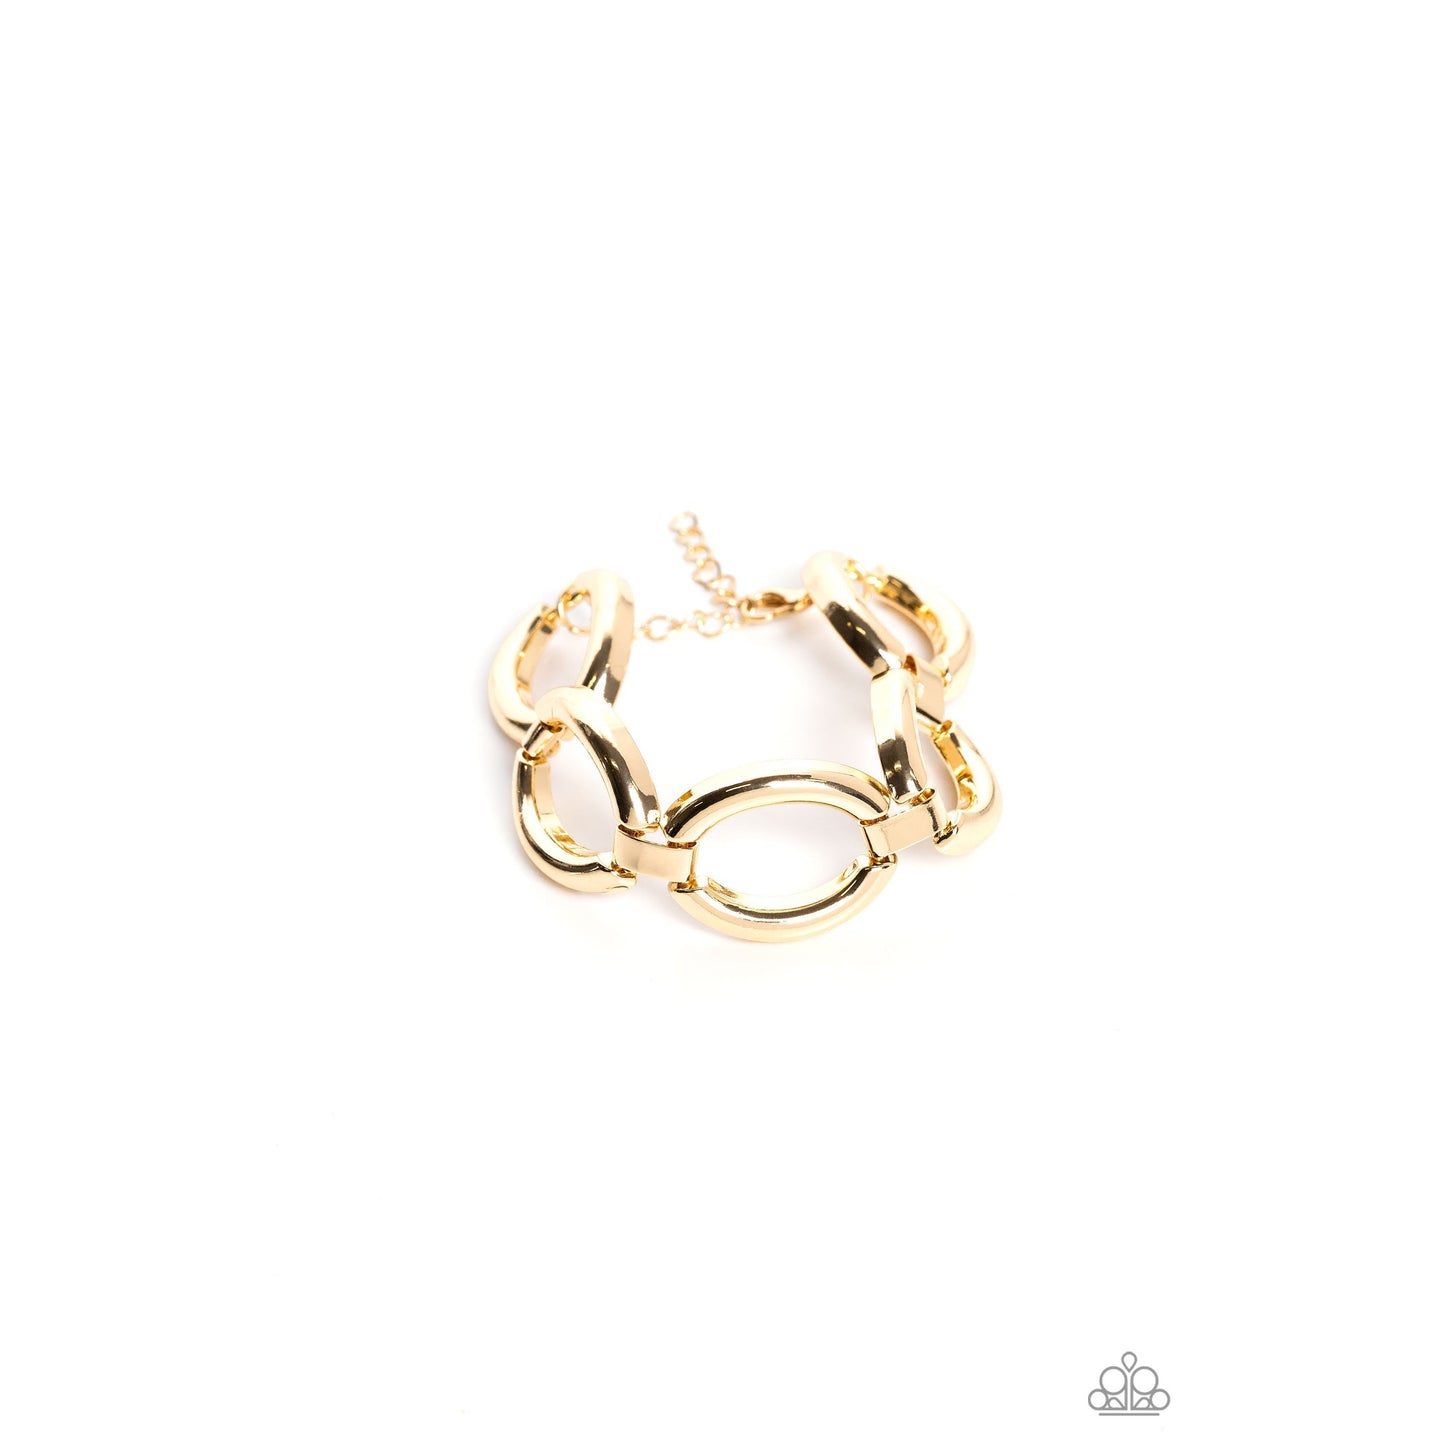 Constructed Chic - Gold Bracelet - Bling by Danielle Baker